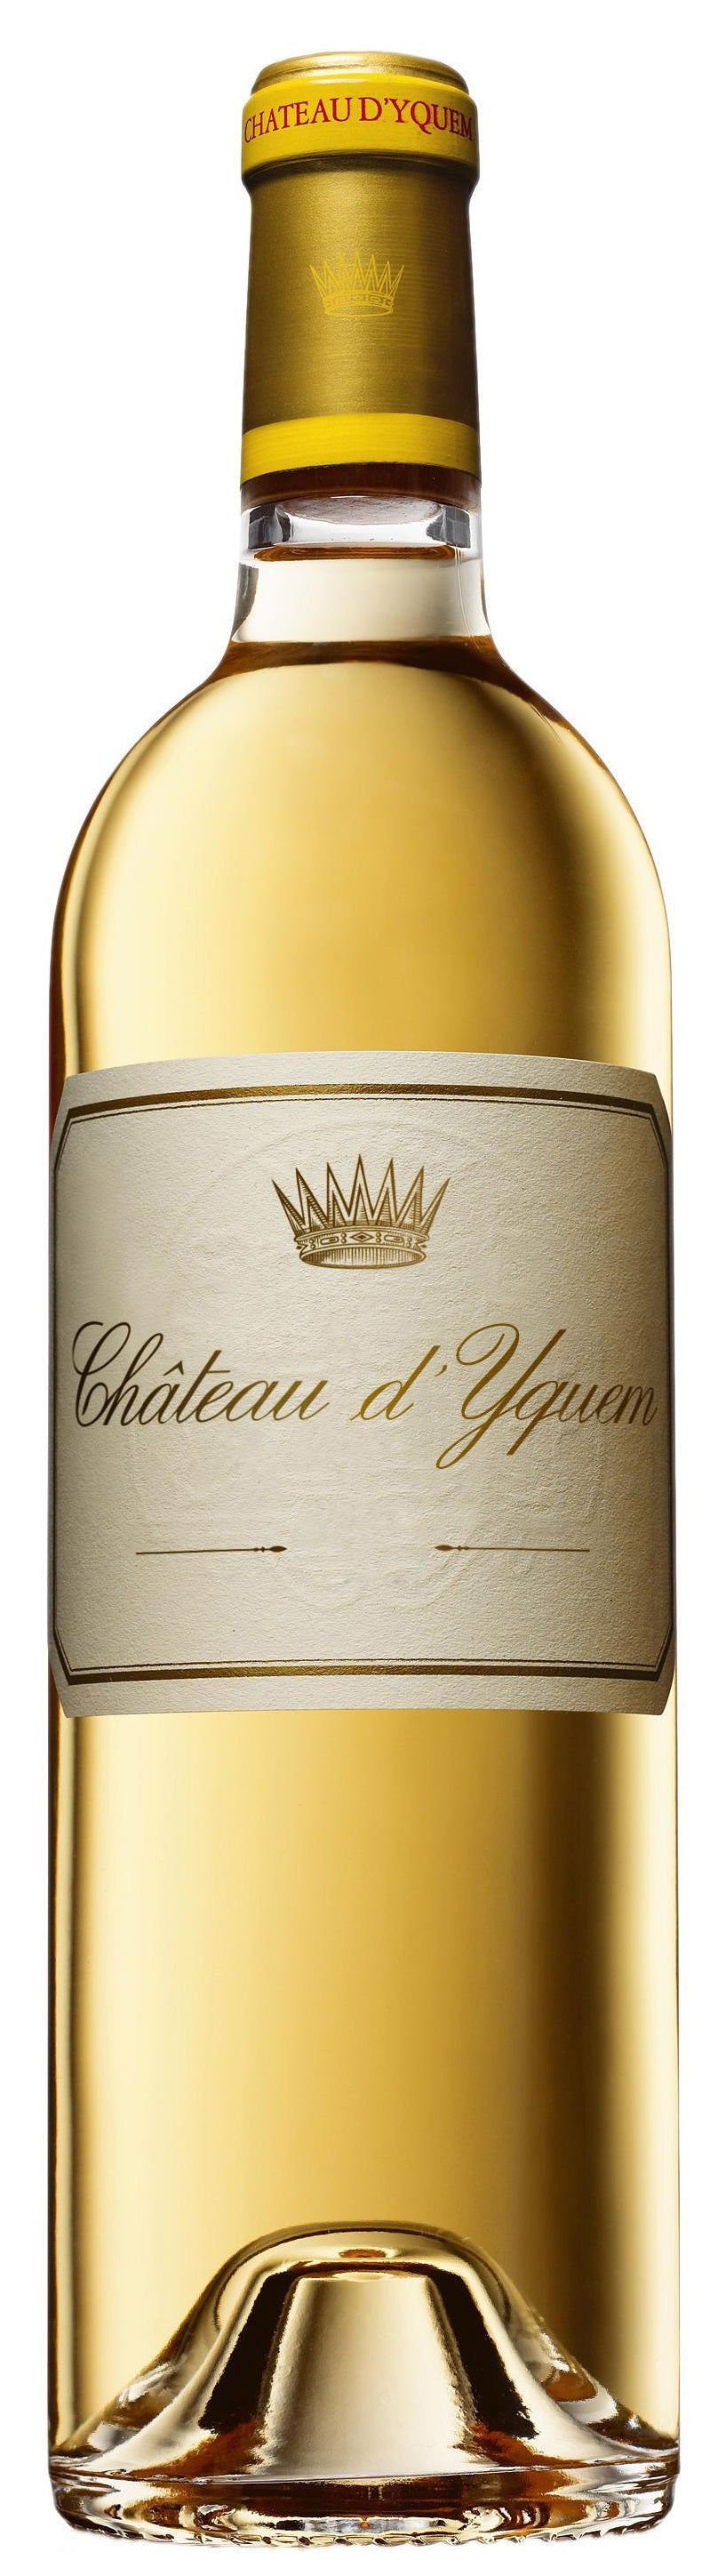 Chateau d'Yquem Sauternes 2017